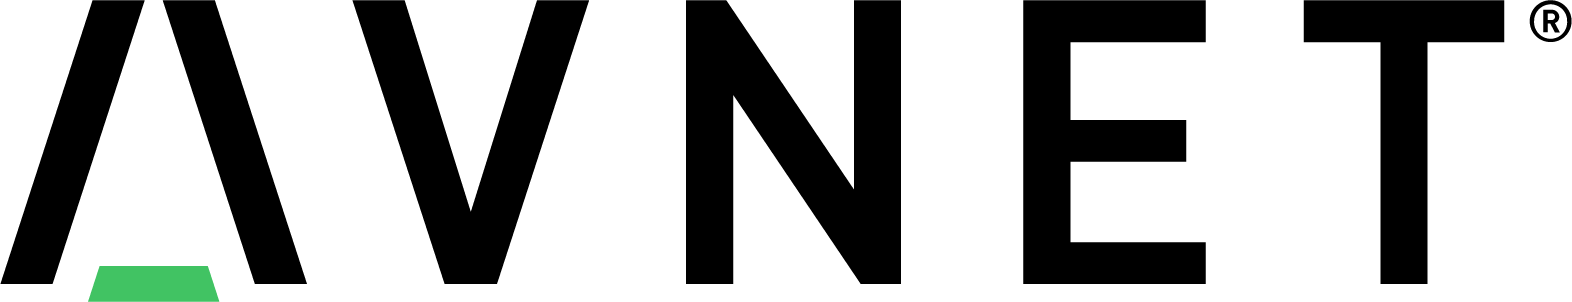 Avnet Logo png